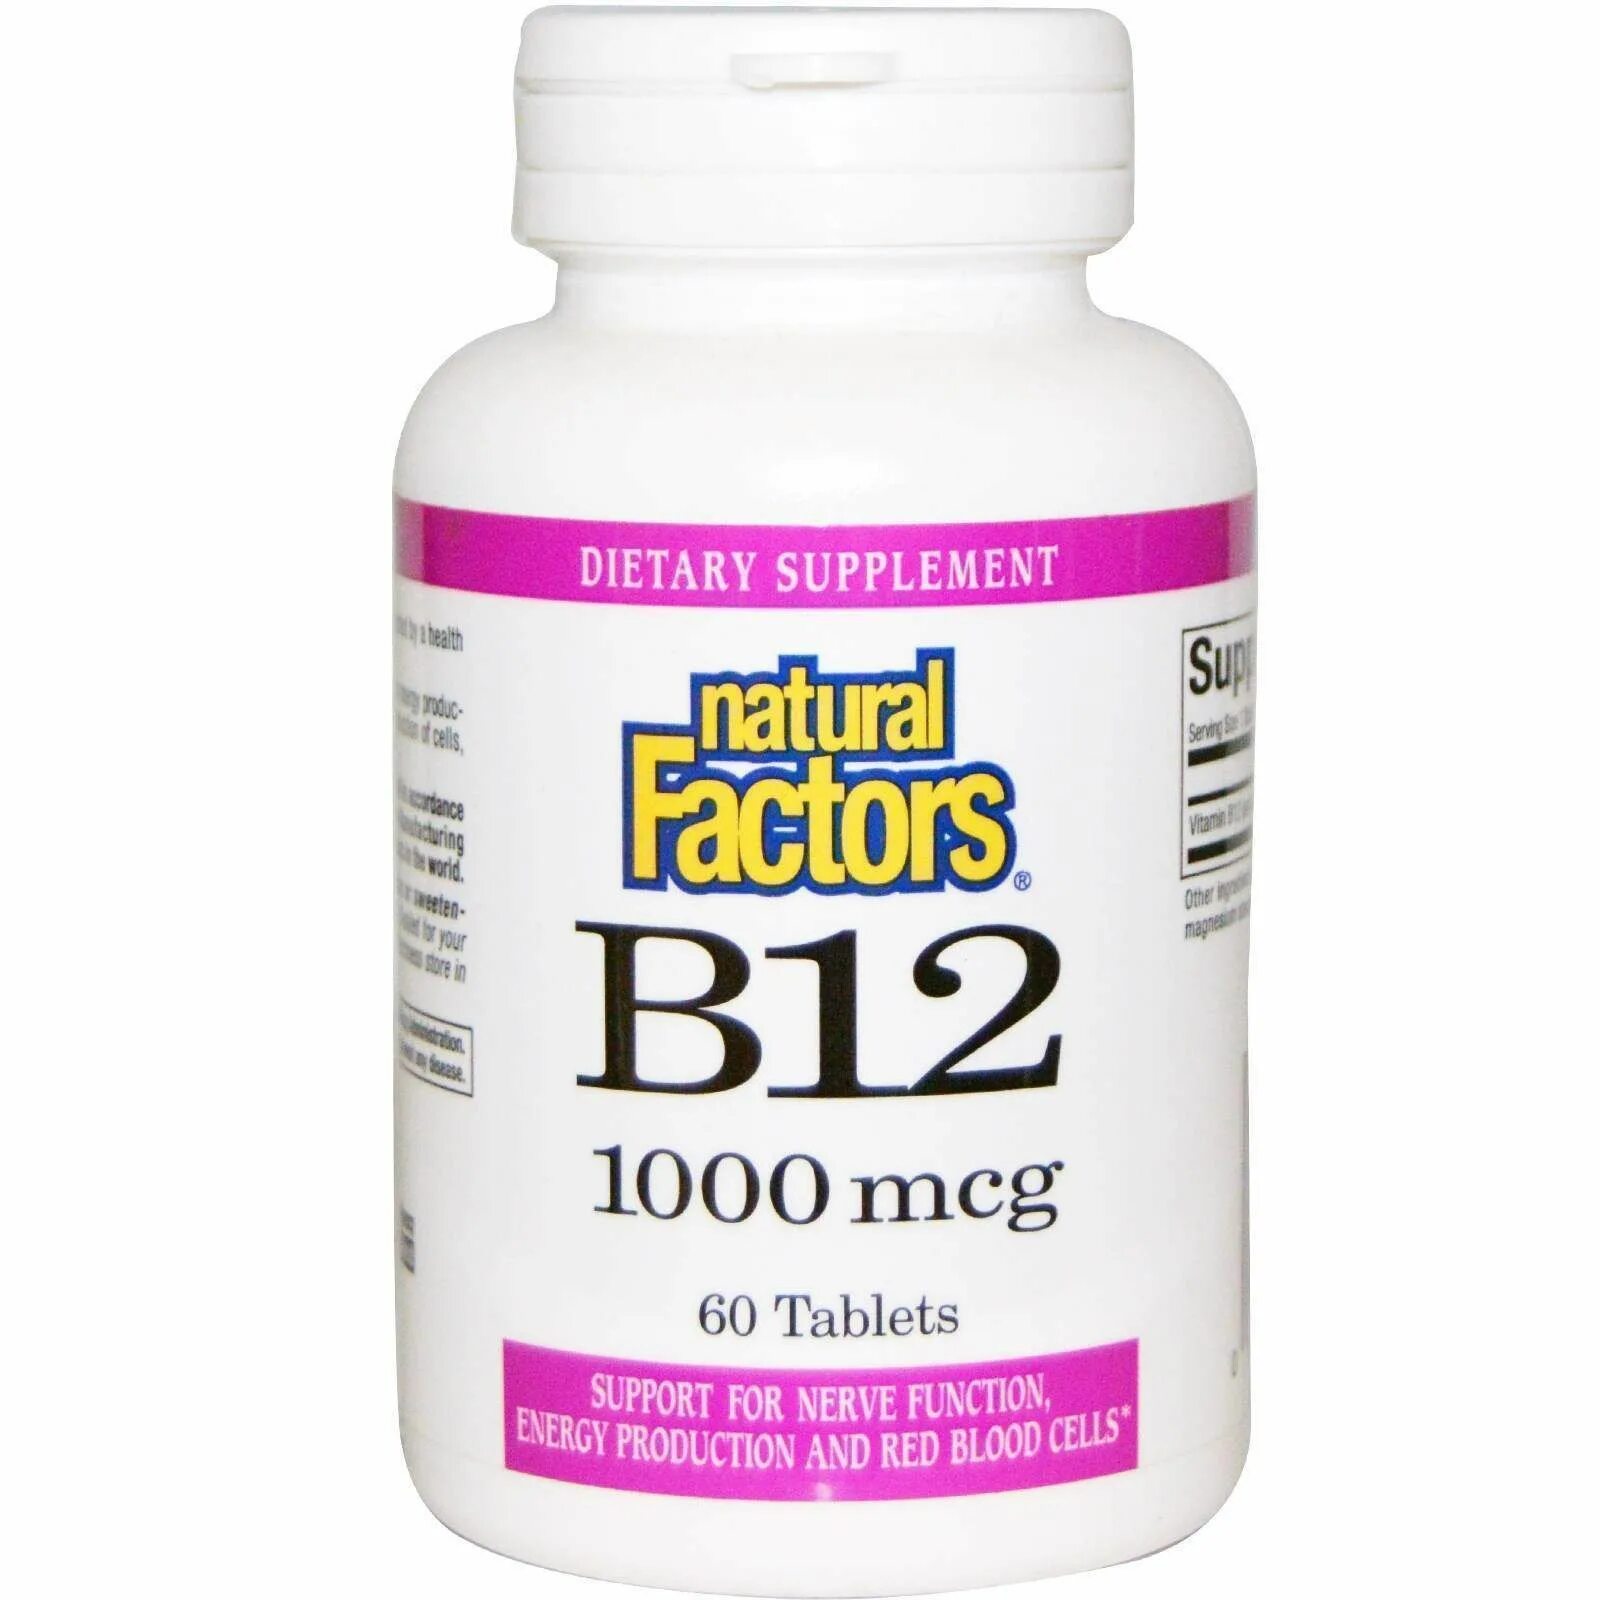 Купить б12 в таблетках. Витамин б12 1000 мг. B12 цианокобаламин в таблетках. Б12 цианокобаламин таблетки. Витамин в12 1000 мкг.